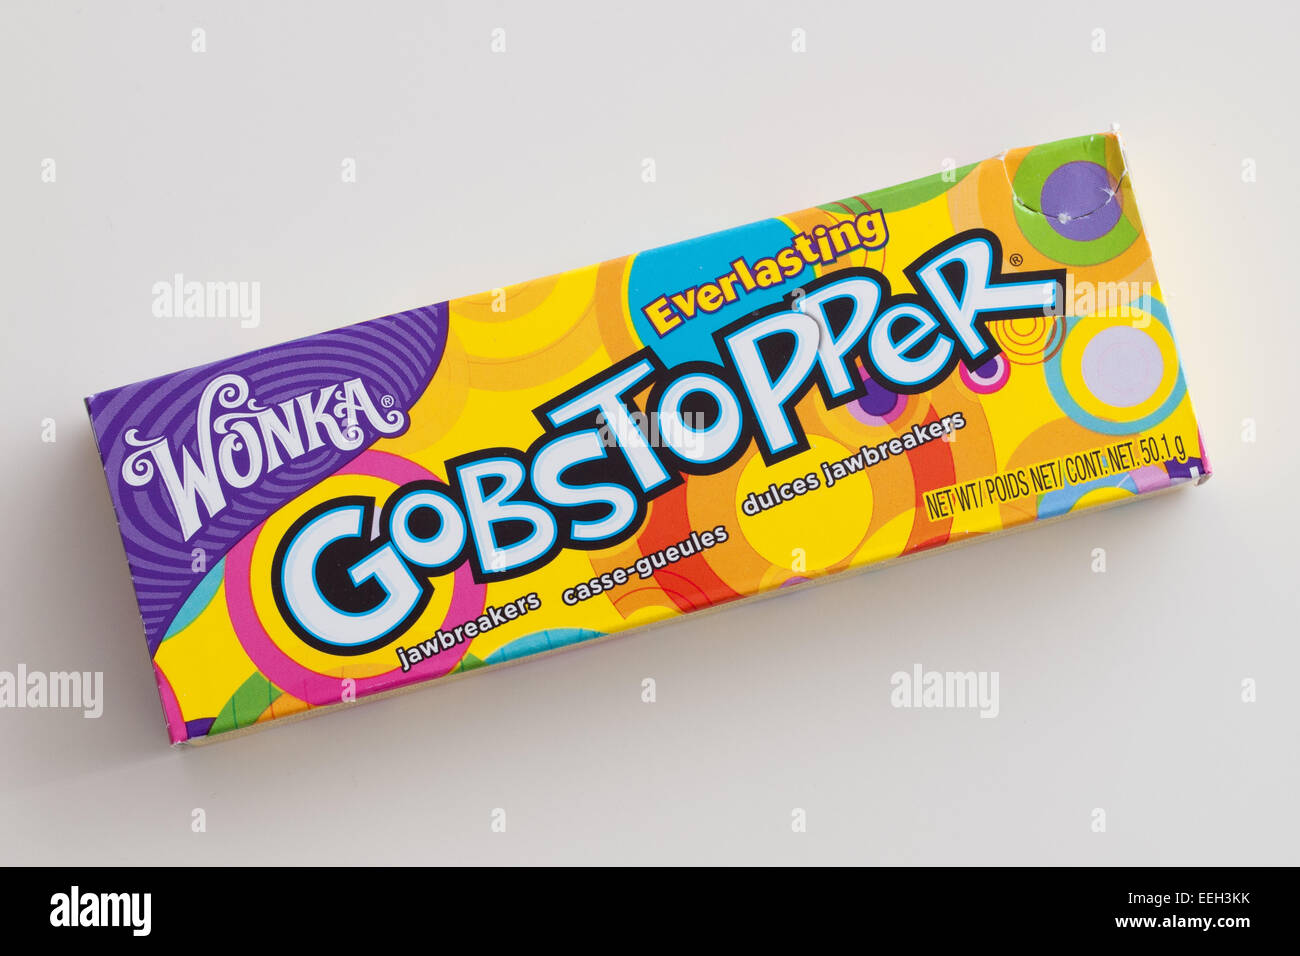 Une boîte de bonbons durs Gobstopper éternelle. Fabriqué par l'entreprise de bonbons de Willy Wonka, une marque de Nestlé. Banque D'Images